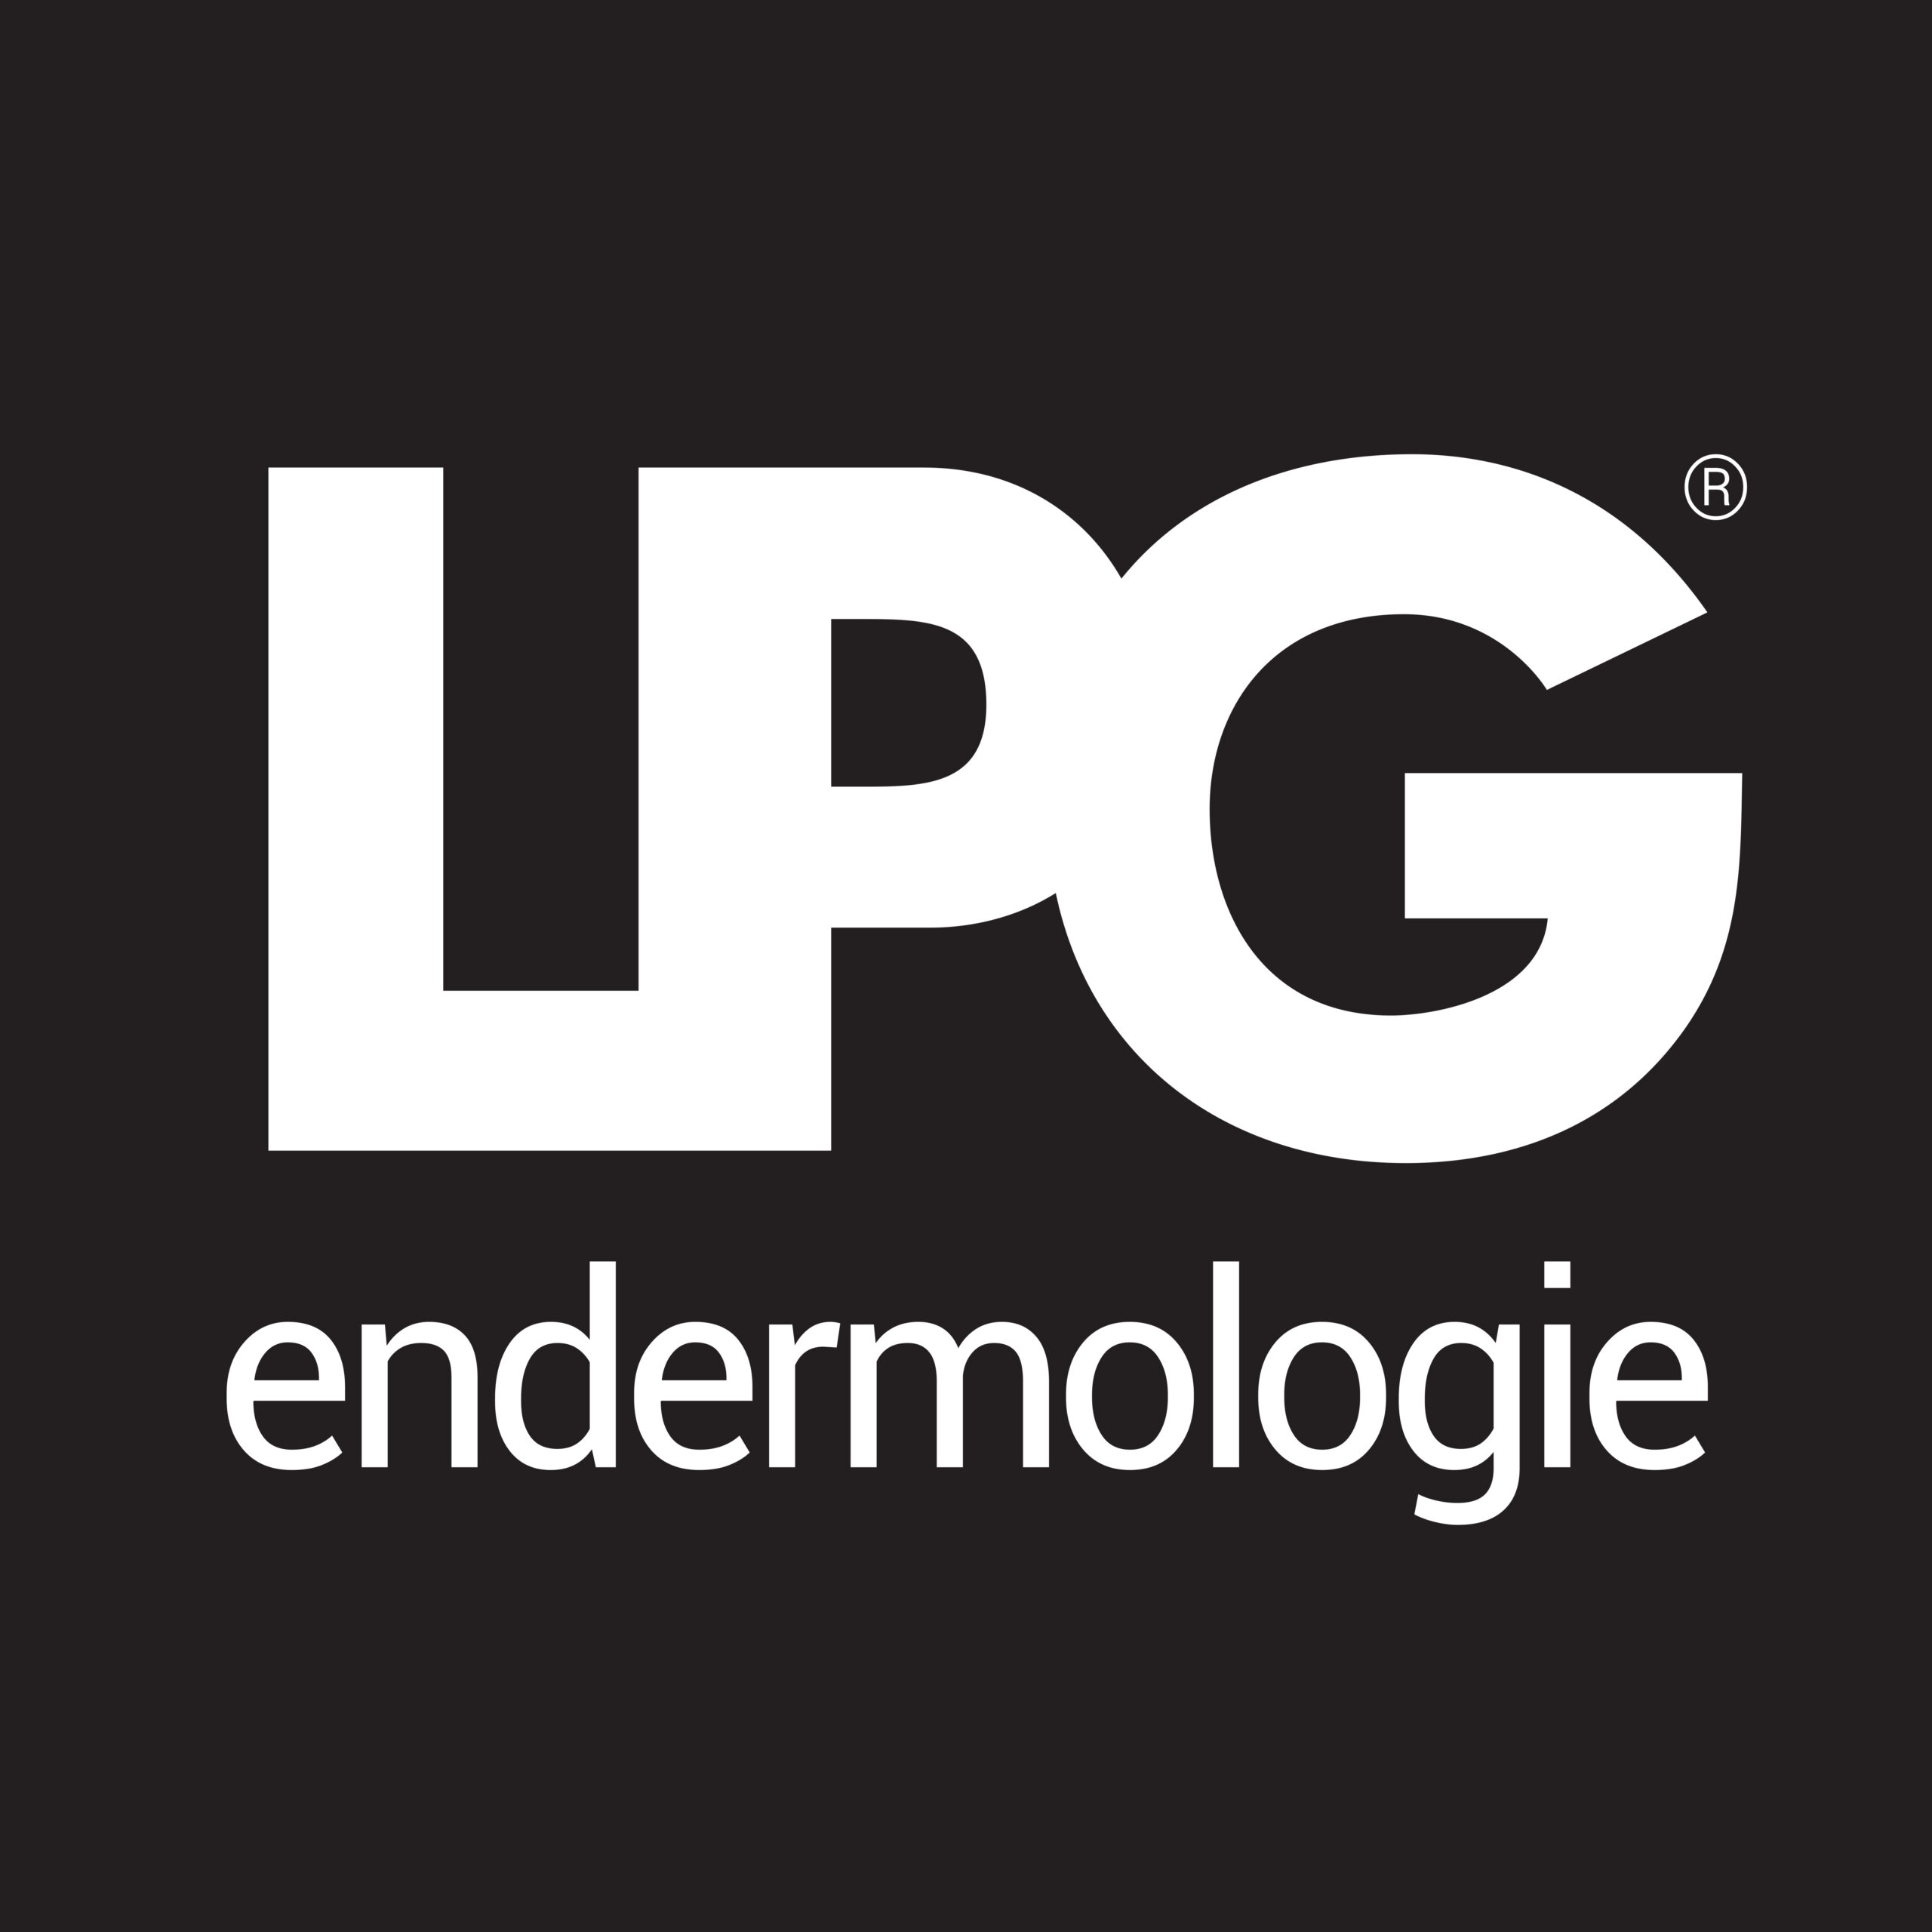 logo-endermologie - LIDS MEDICAL